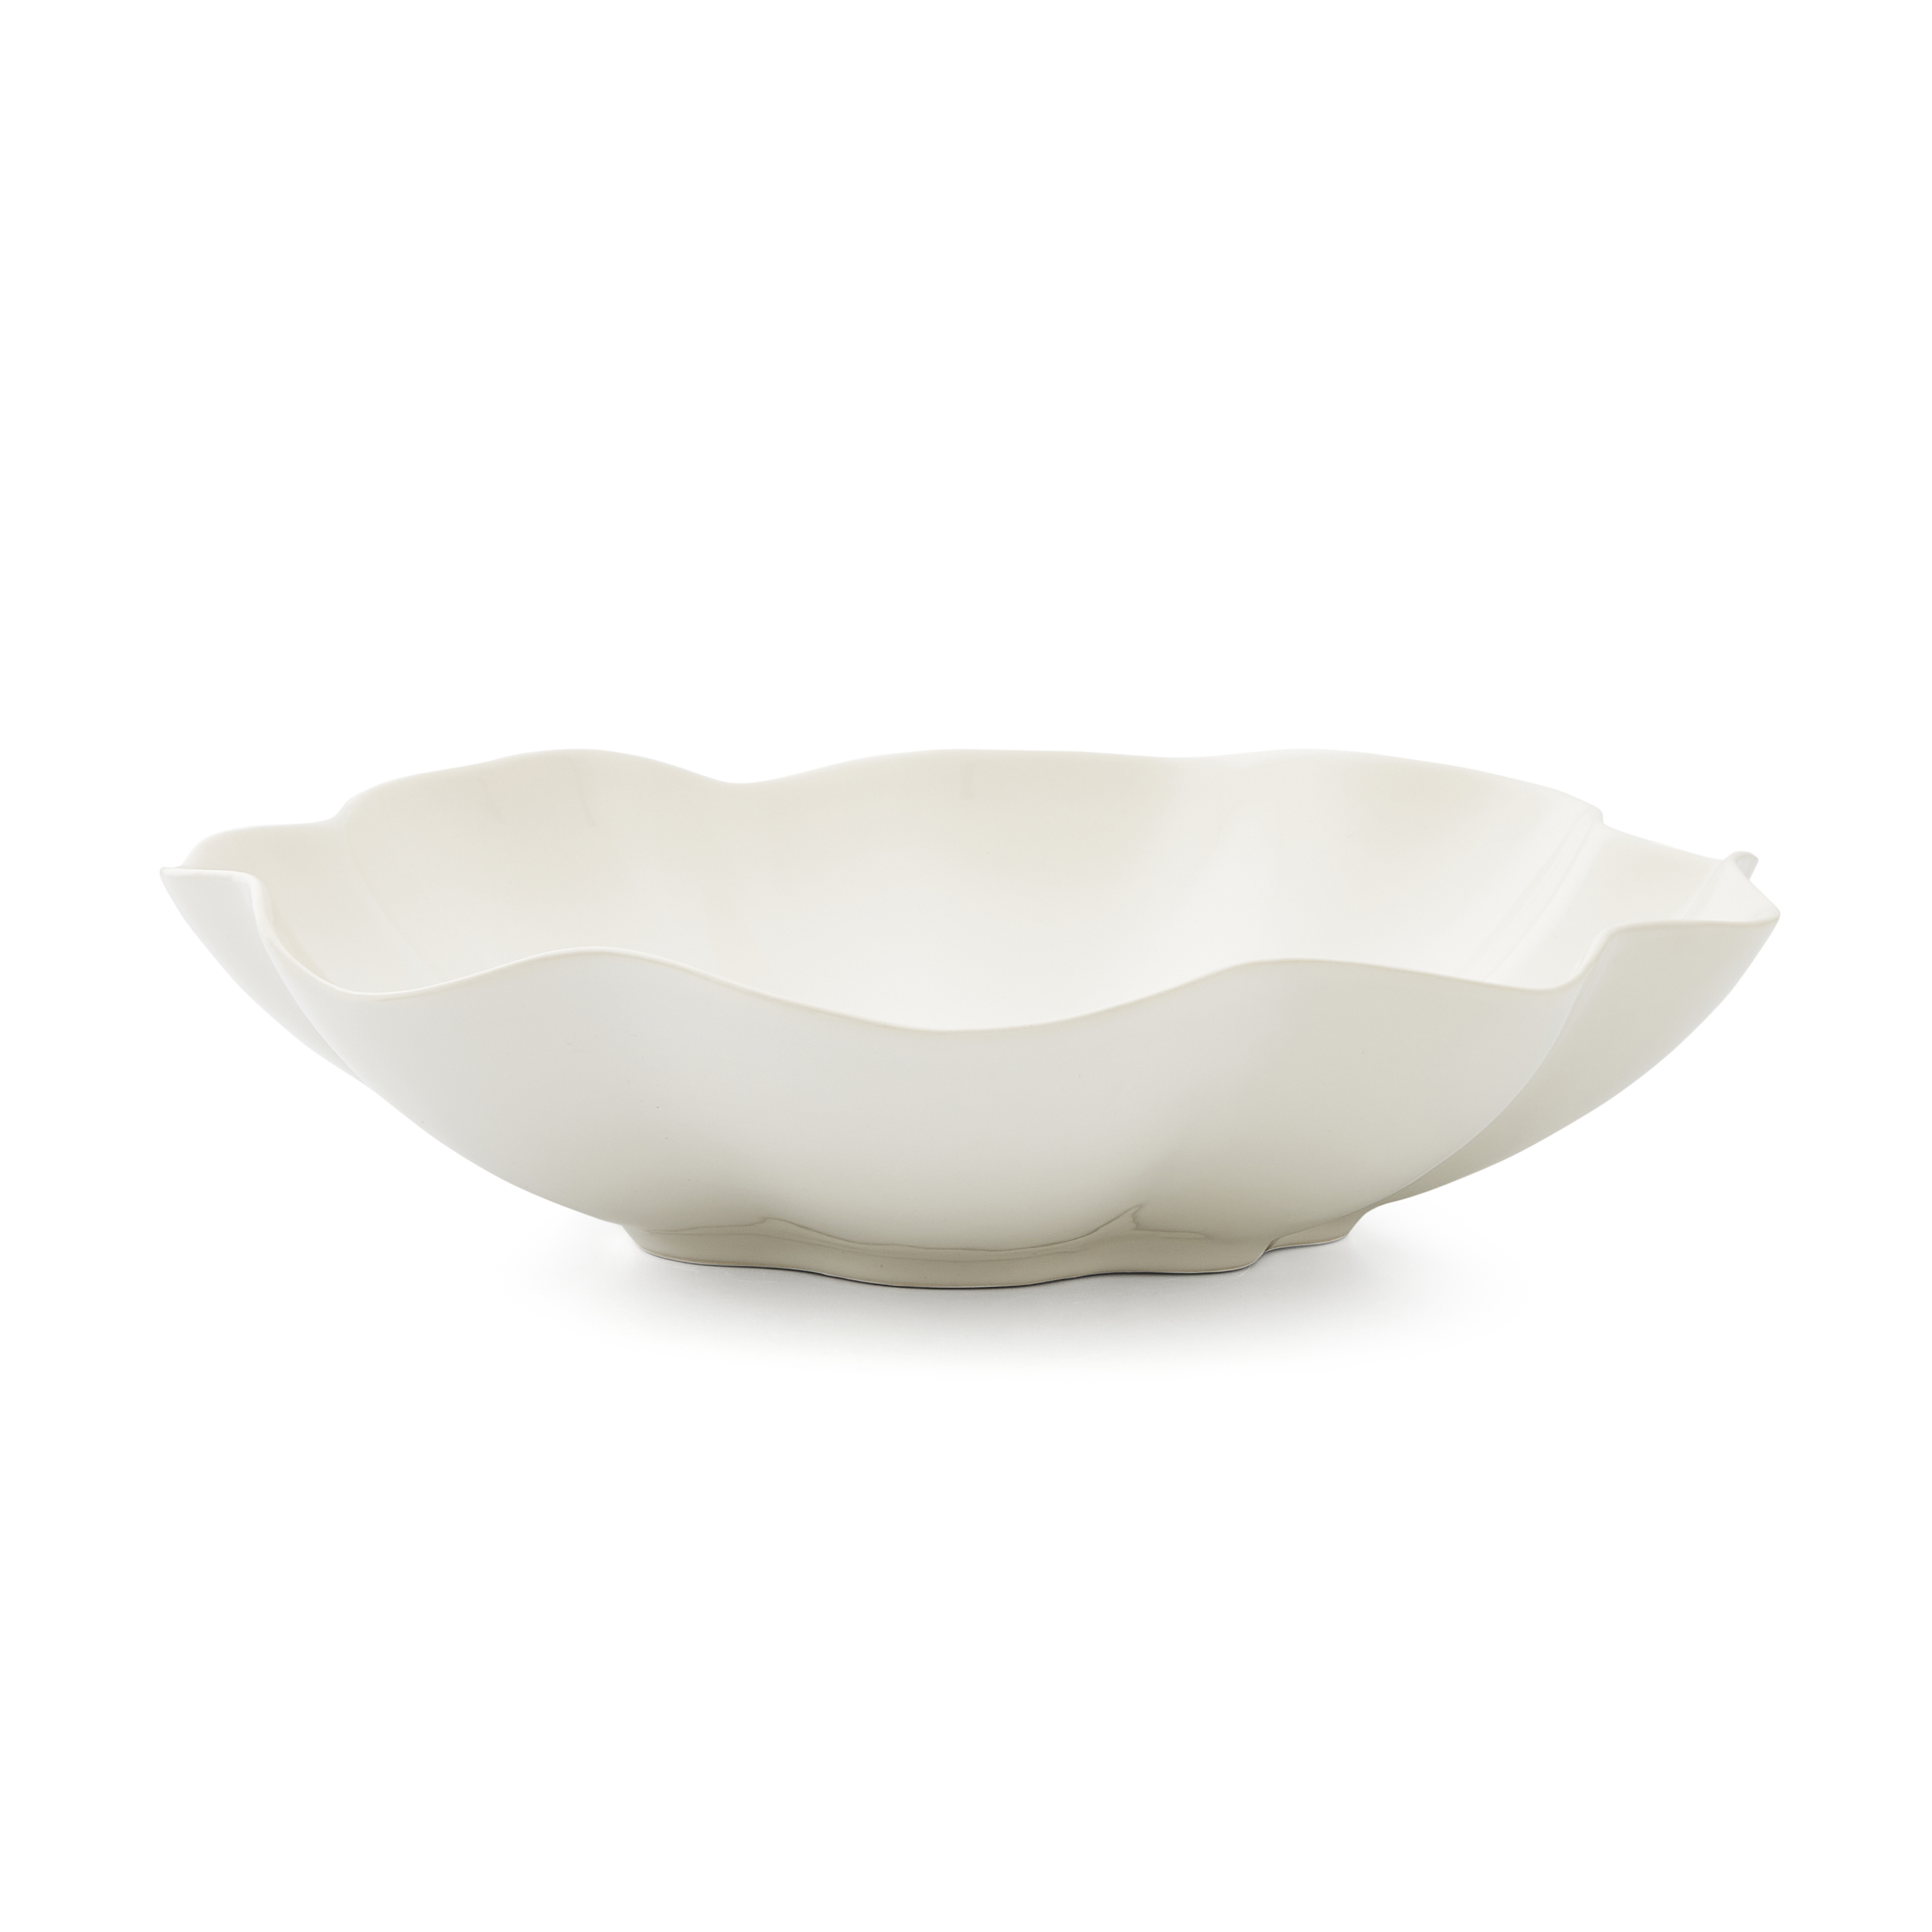 Sophie Conran Floret Large Serving Bowl,Cream image number null